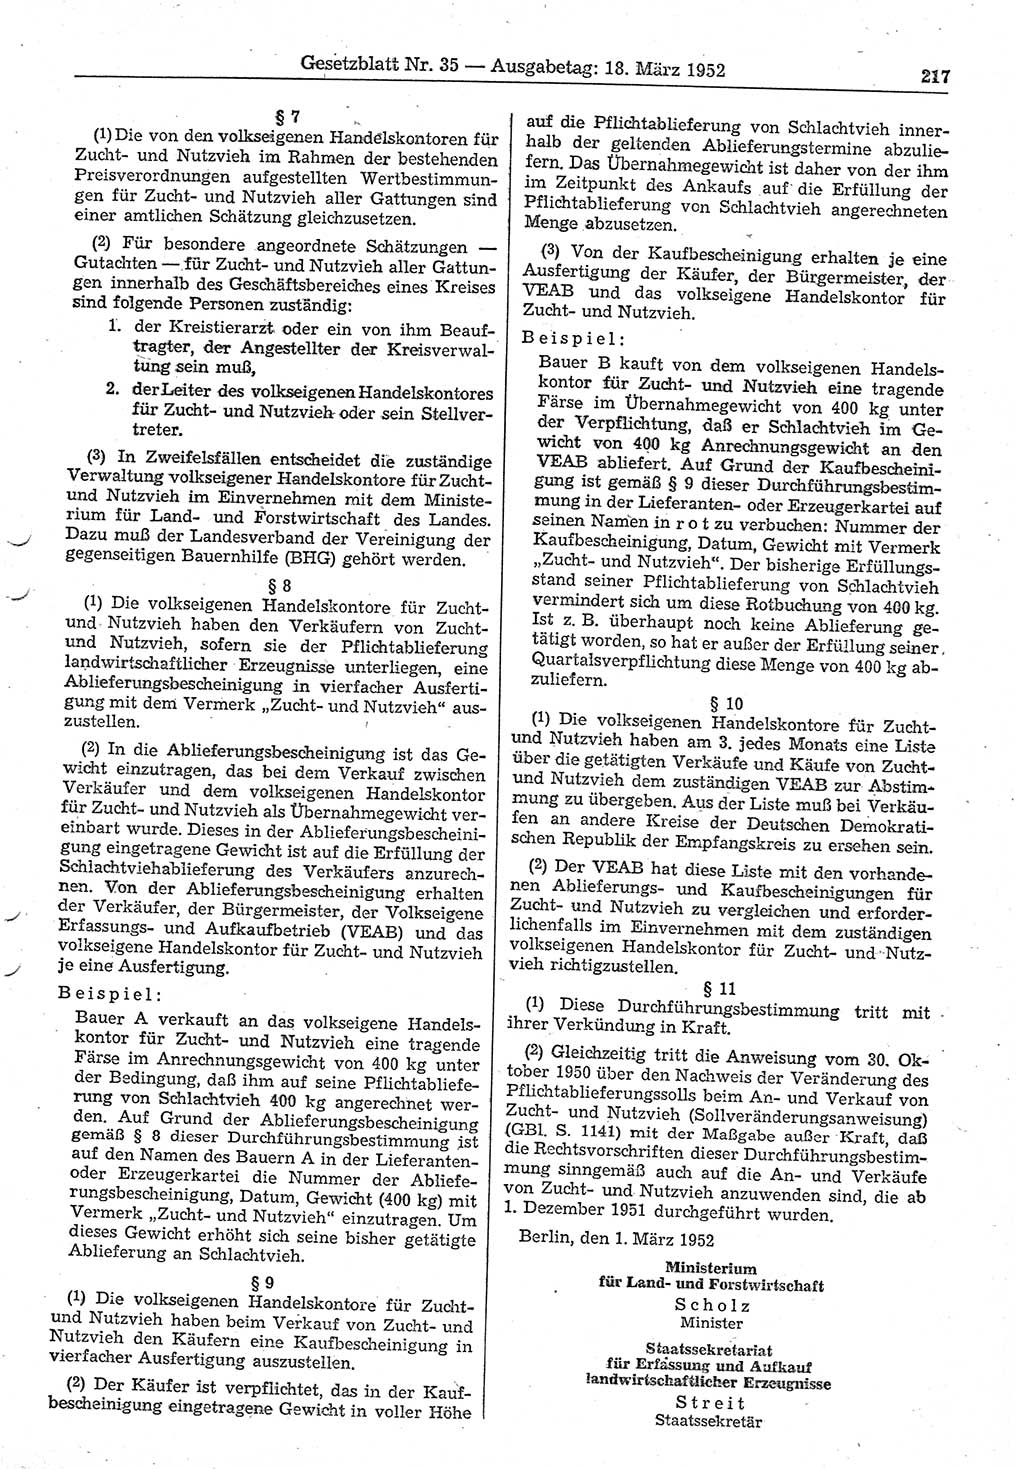 Gesetzblatt (GBl.) der Deutschen Demokratischen Republik (DDR) 1952, Seite 217 (GBl. DDR 1952, S. 217)